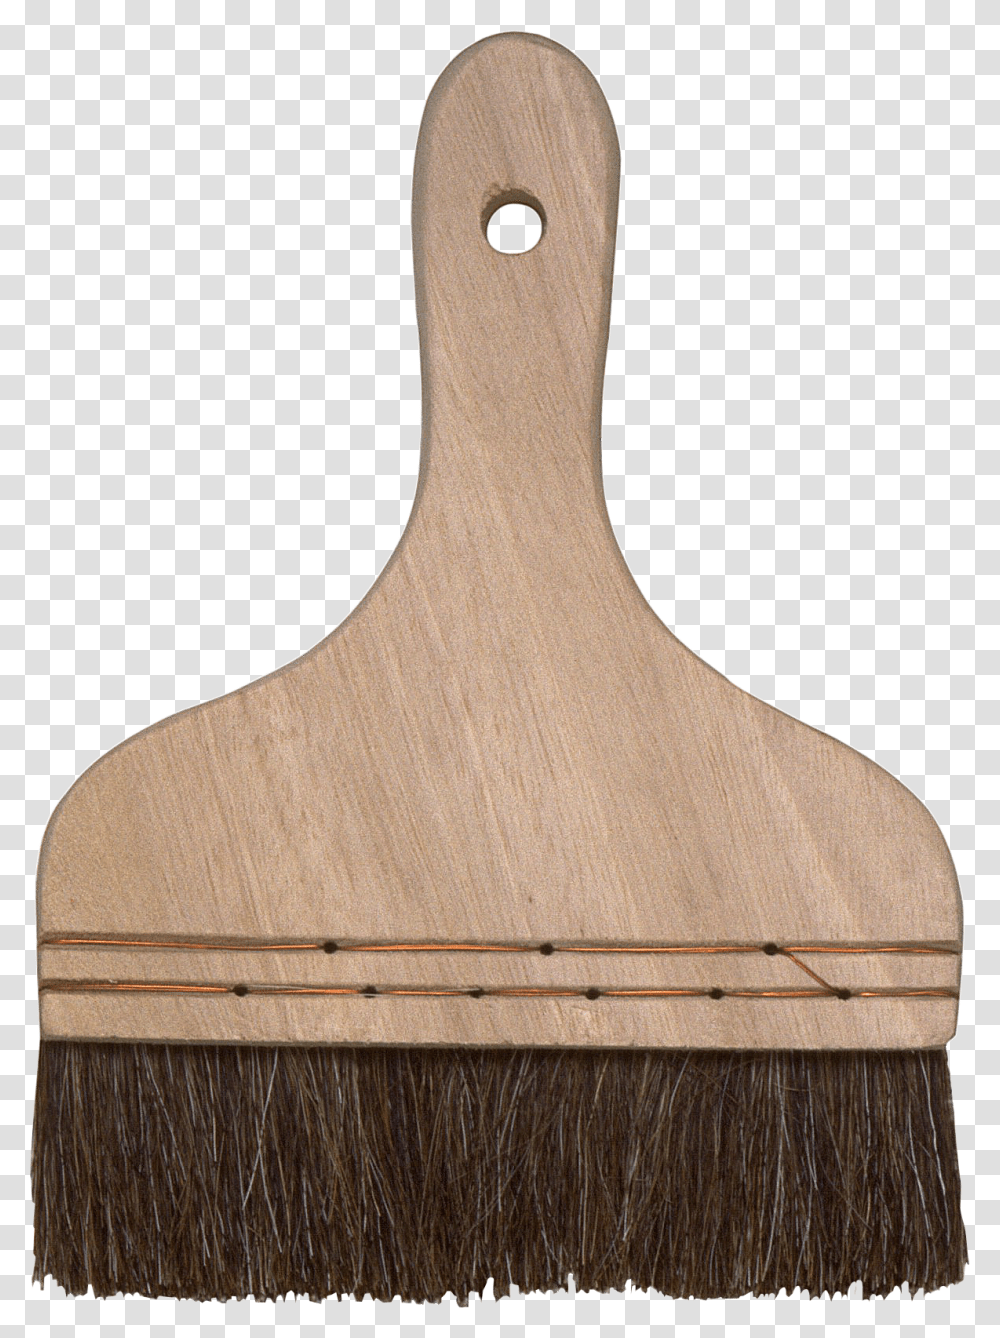 Brush, Hanger, Broom Transparent Png